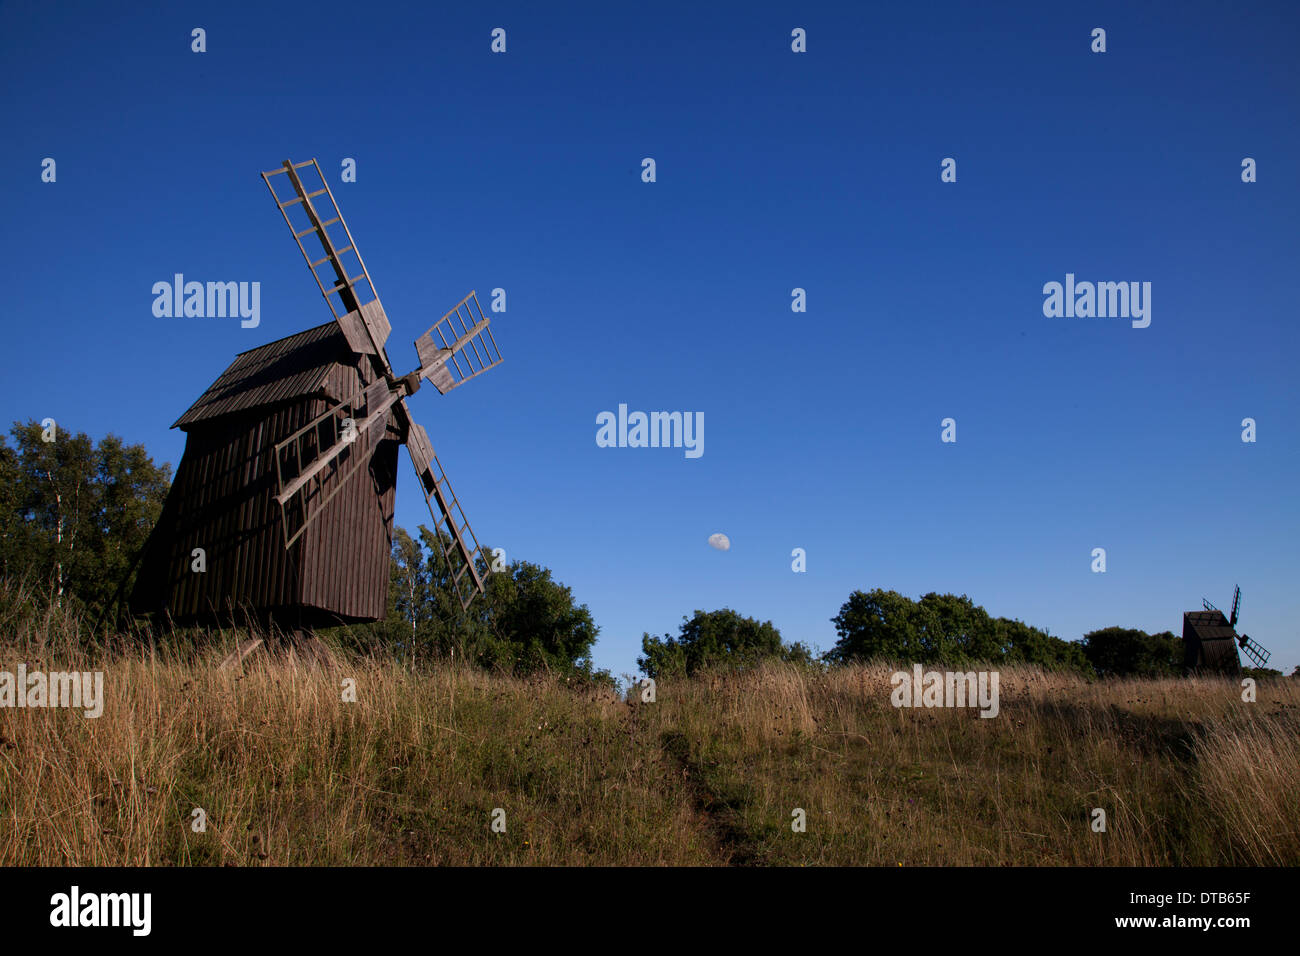 Ancien moulin à vent et de pelouse, Oland, Sweden Banque D'Images